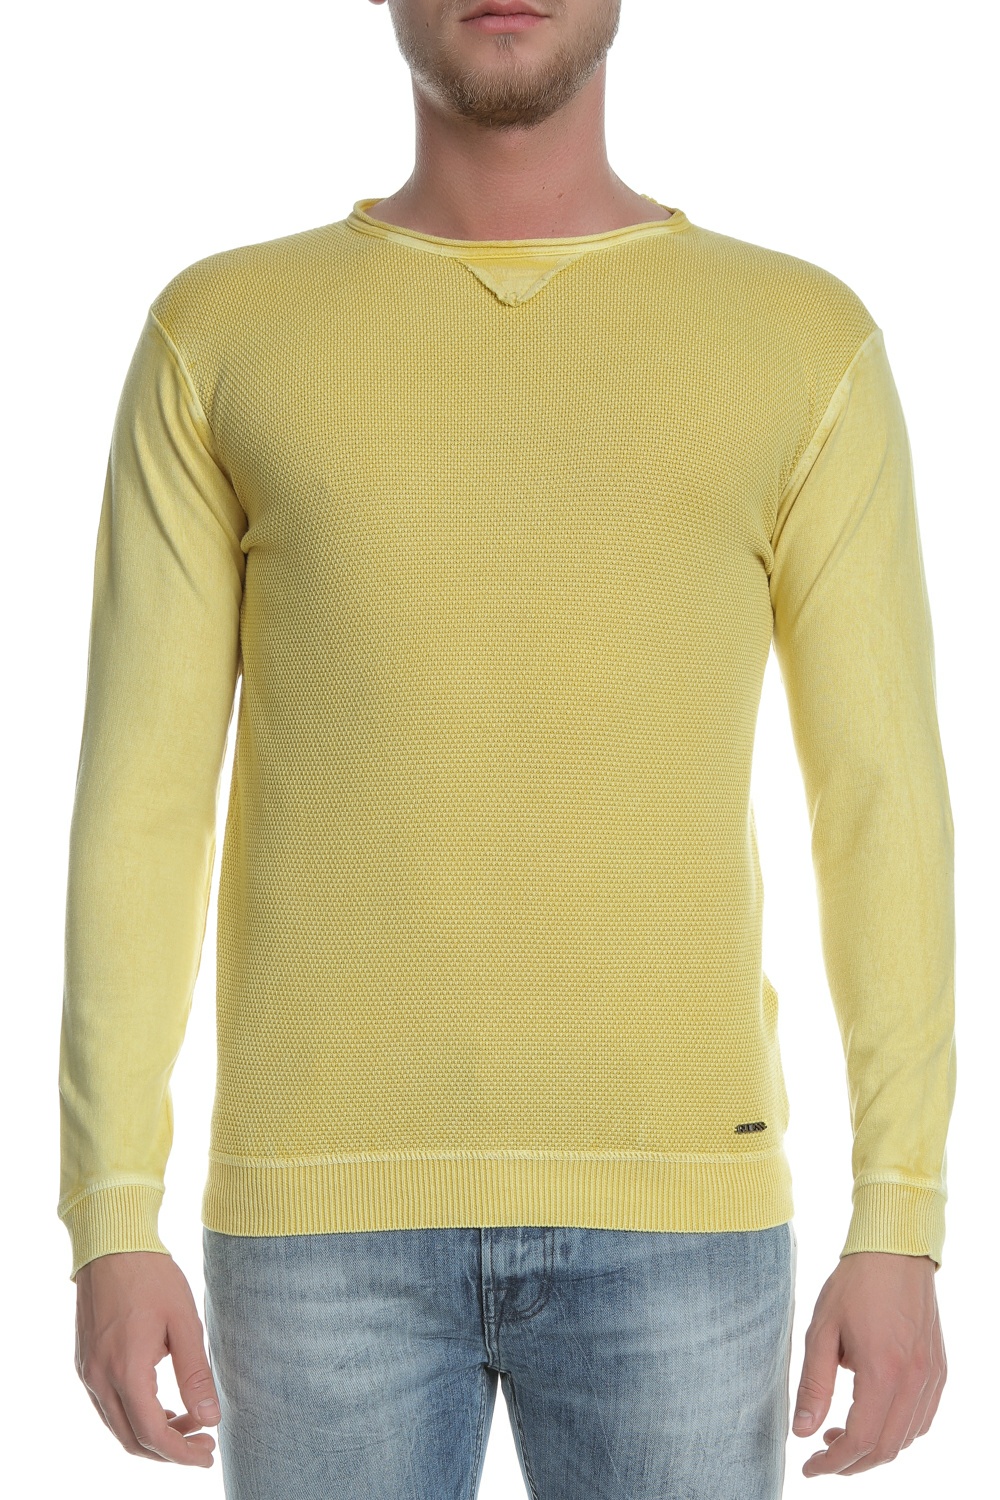 Ανδρικά/Ρούχα/Μπλούζες/Μακρυμάνικες GUESS - Ανδρική μακρυμάνικη μπλούζα LIONS GUESS κίτρινη